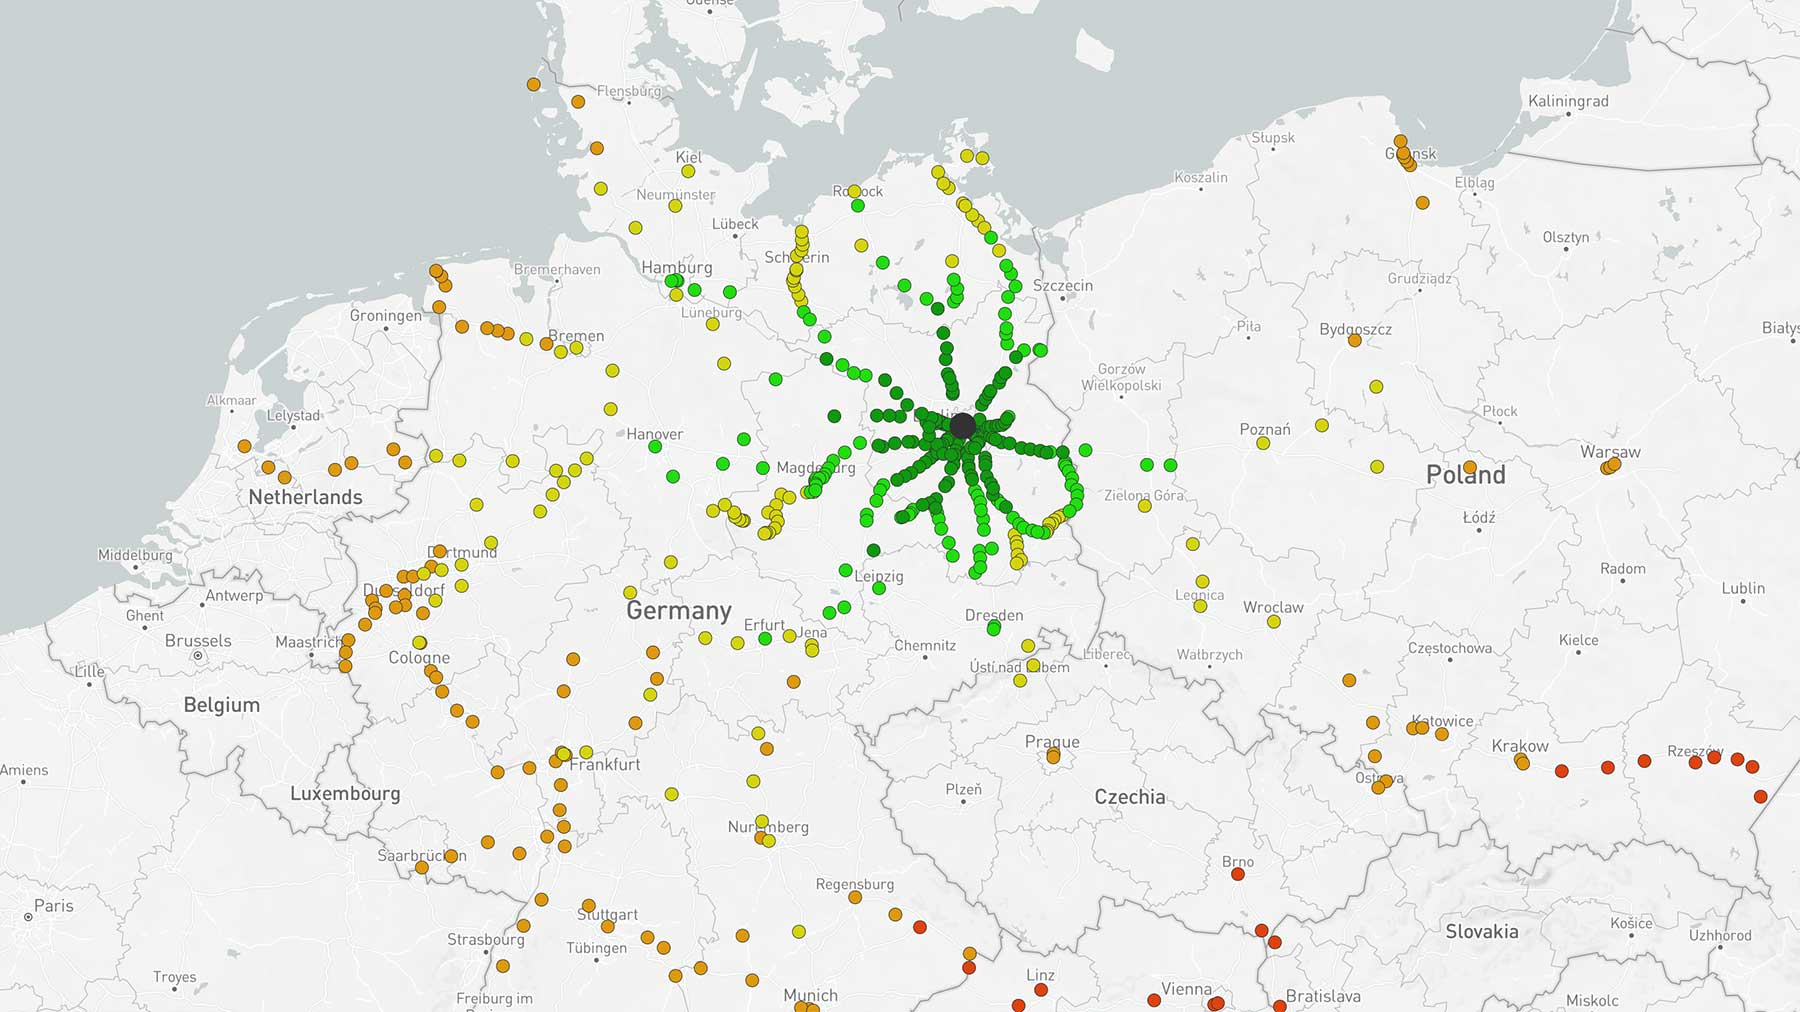 Interaktive Karte zeigt Zug-Direktverbindungen ausgehend von Bahnhöfen